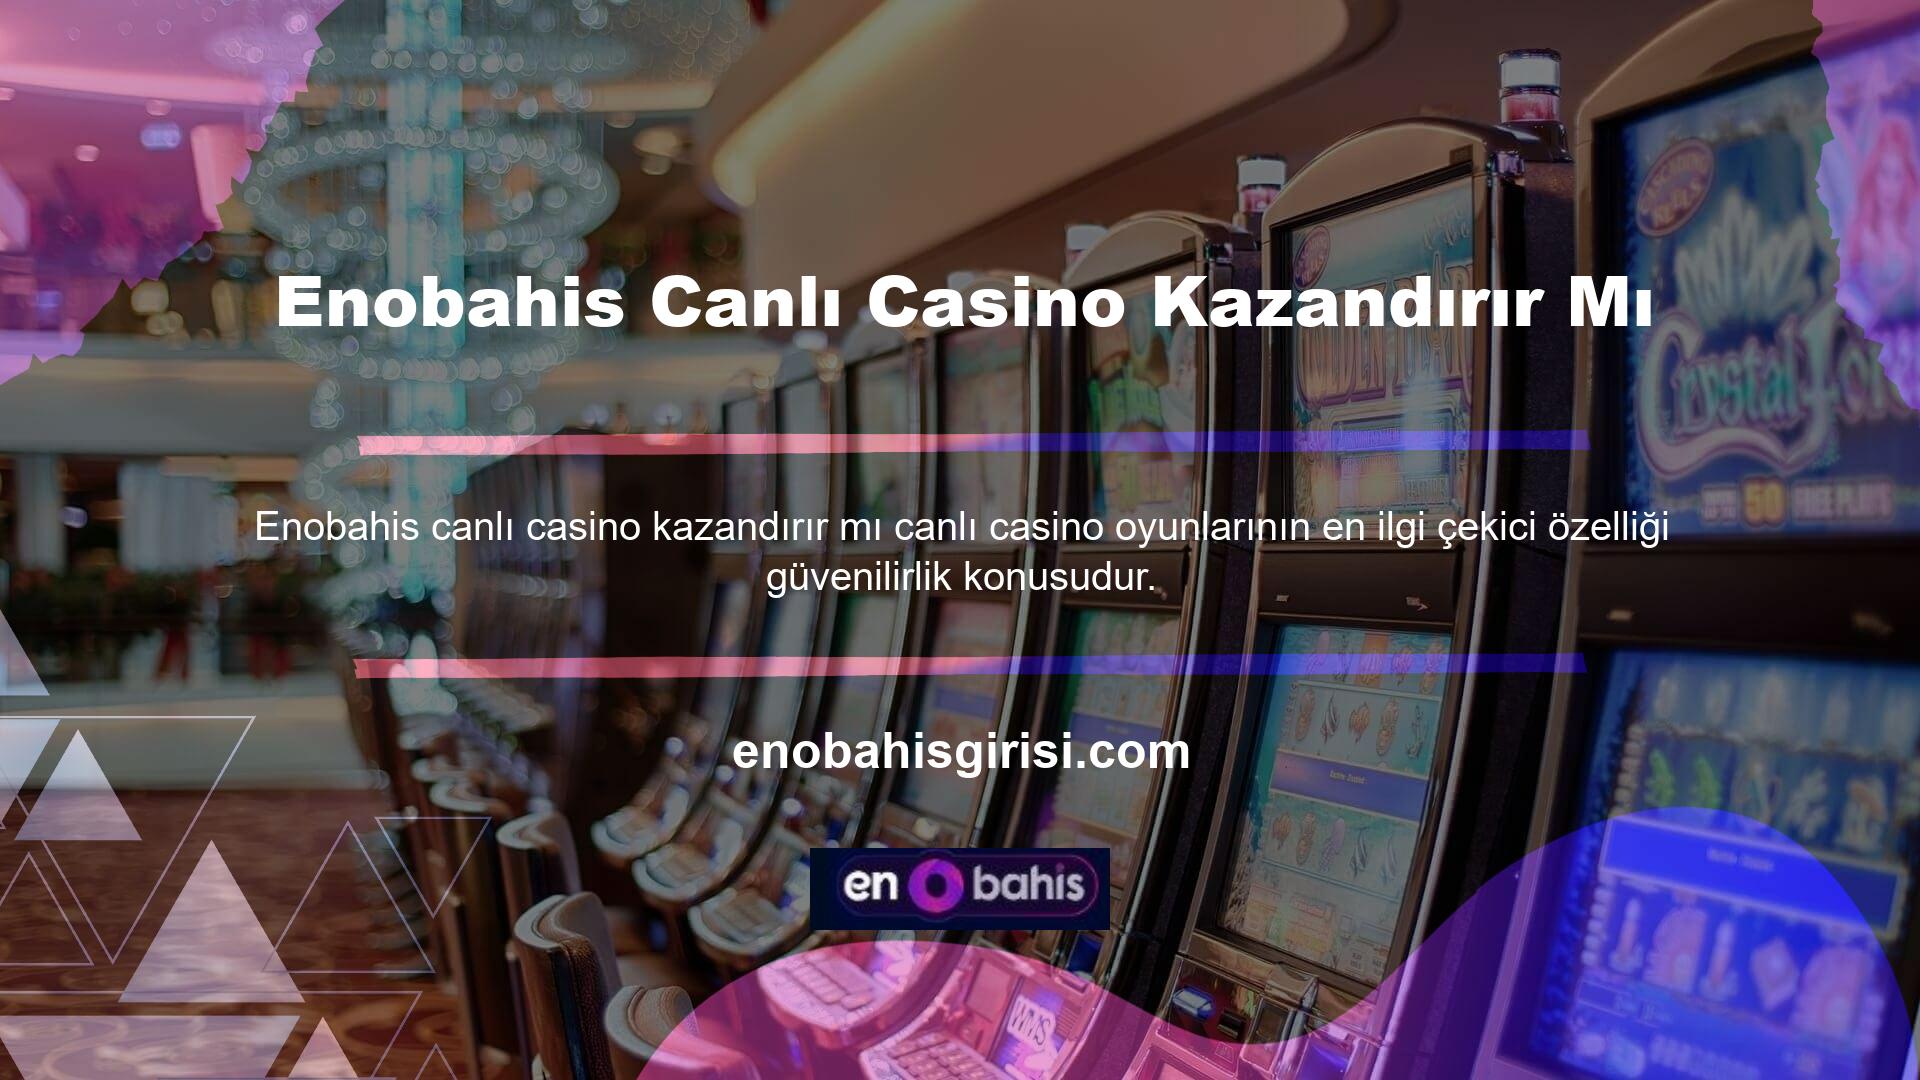 Enobahis canlı casino gelecekte karlı olacak mı? Bu soru sıklıkla sorulur